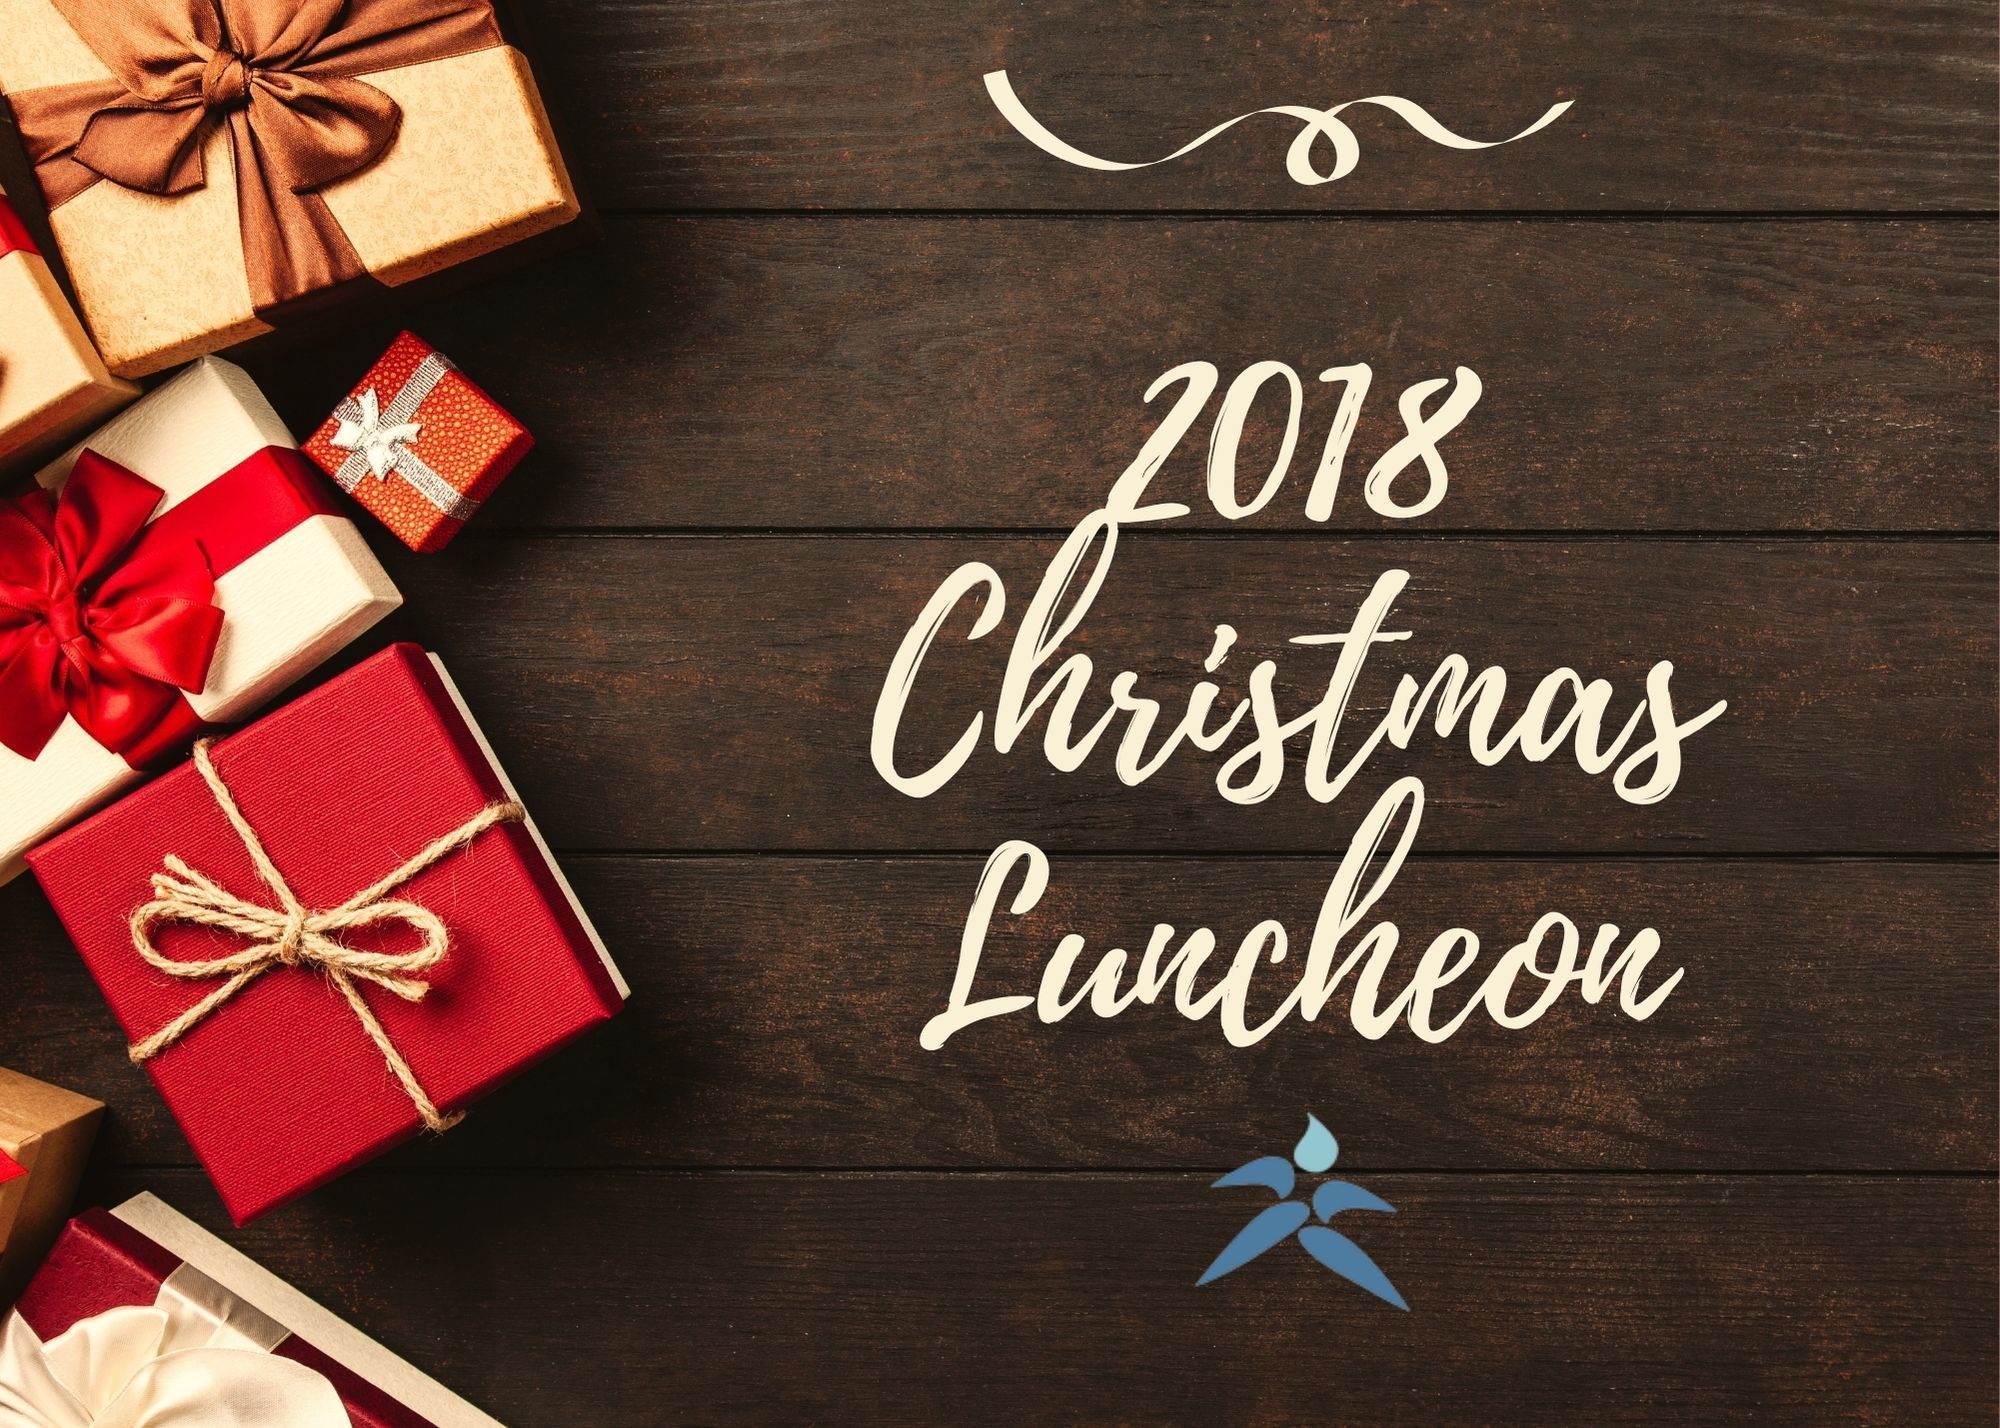 2018 Christmas Luncheon